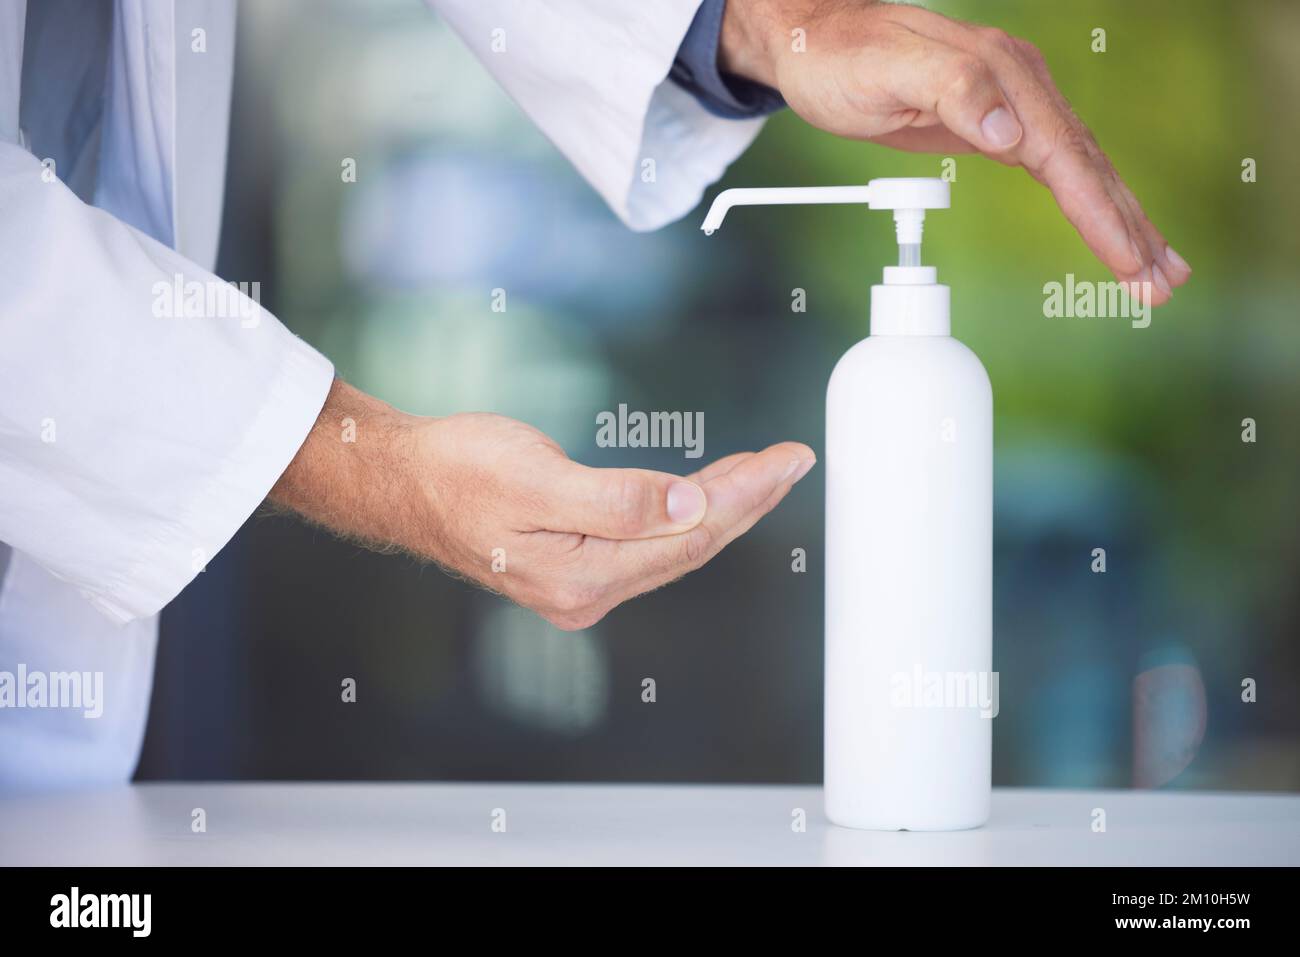 Conformité, nettoyage ou mains avec l'assainisseur pour les bactéries afin d'empêcher la propagation d'un virus par des doigts poussiéreux, sales ou sales. Zoom, main d'un médecin ou d'un professionnel de la santé Banque D'Images